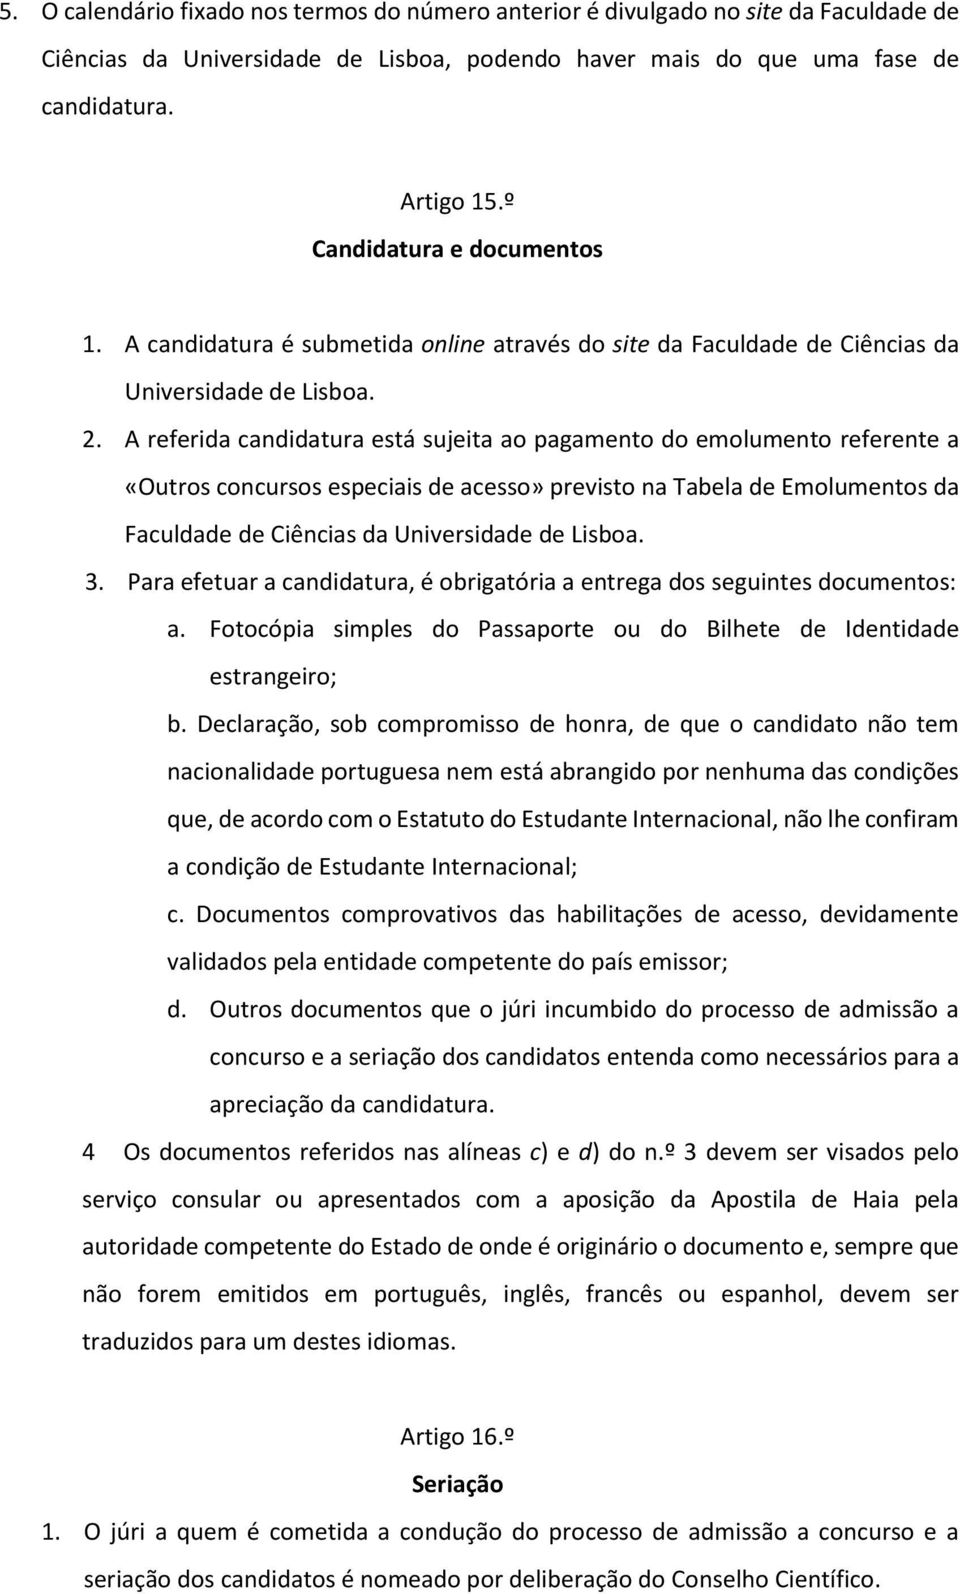 A referida candidatura está sujeita ao pagamento do emolumento referente a «Outros concursos especiais de acesso» previsto na Tabela de Emolumentos da Faculdade de Ciências da Universidade de Lisboa.